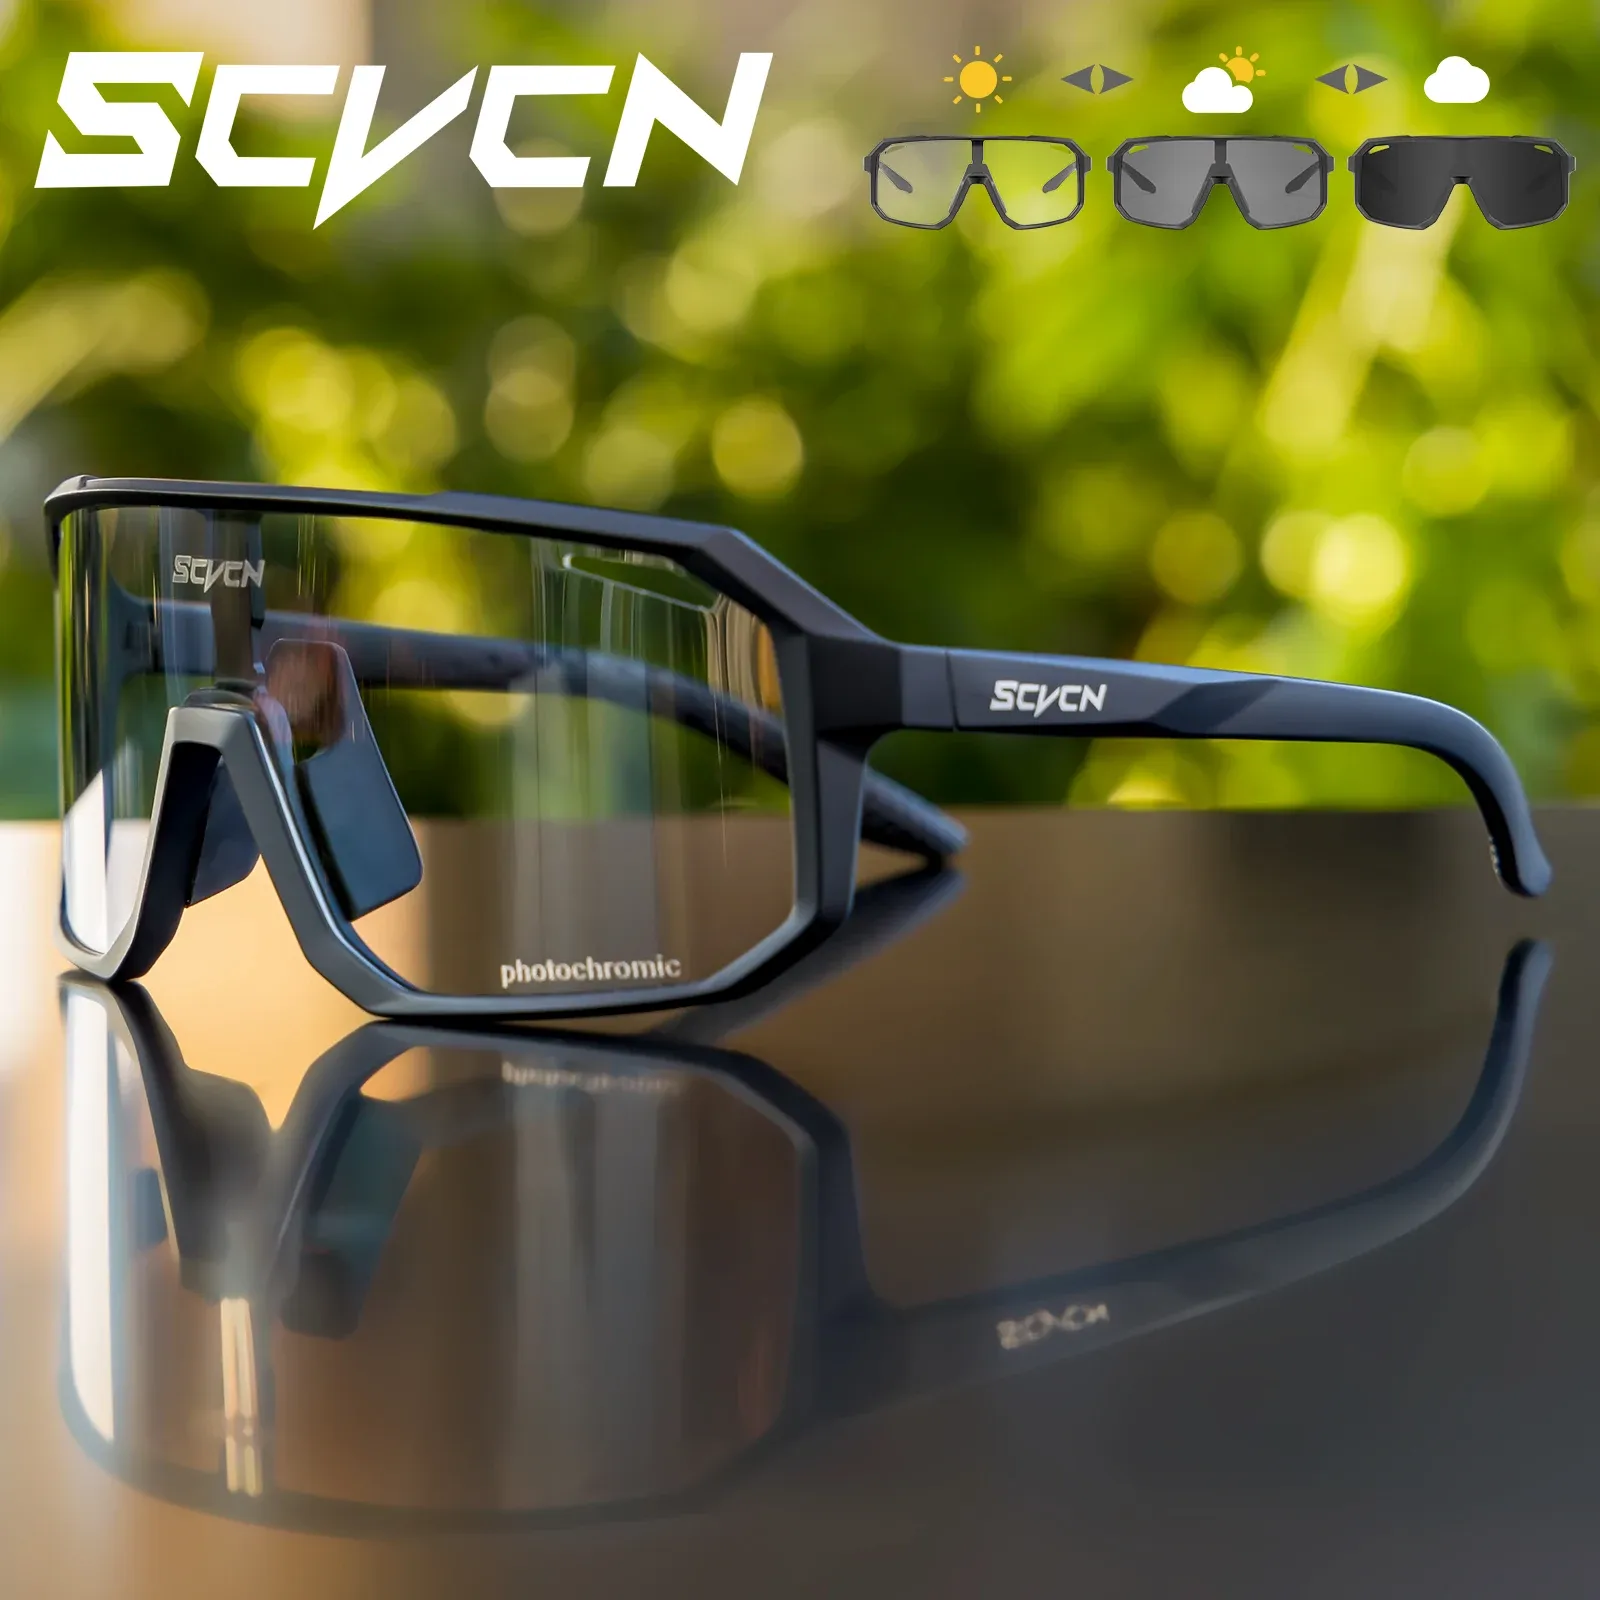 Солнцезащитные очки Scvcn горячие фотохромные солнцезащитные очки мужчины женщины на открытом воздухе спорт езды на велосипеде дорогой велосипед